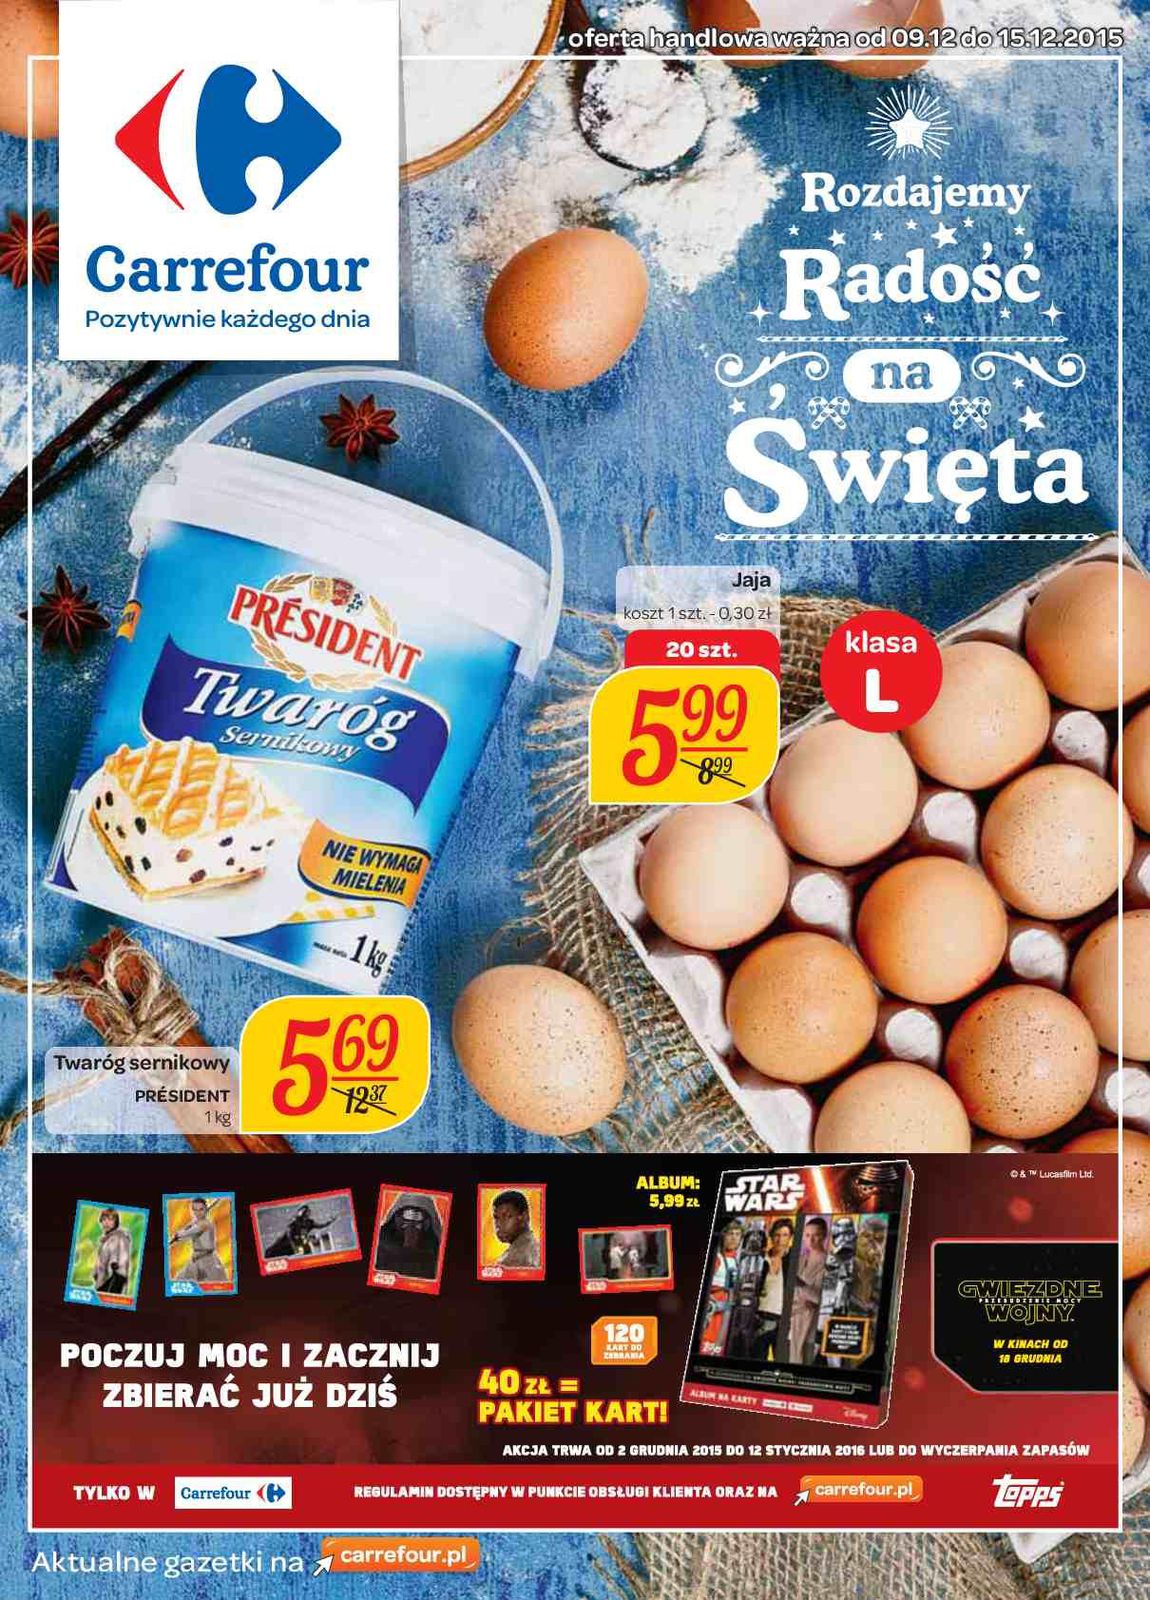 Gazetka promocyjna Carrefour do 15/12/2015 str.0